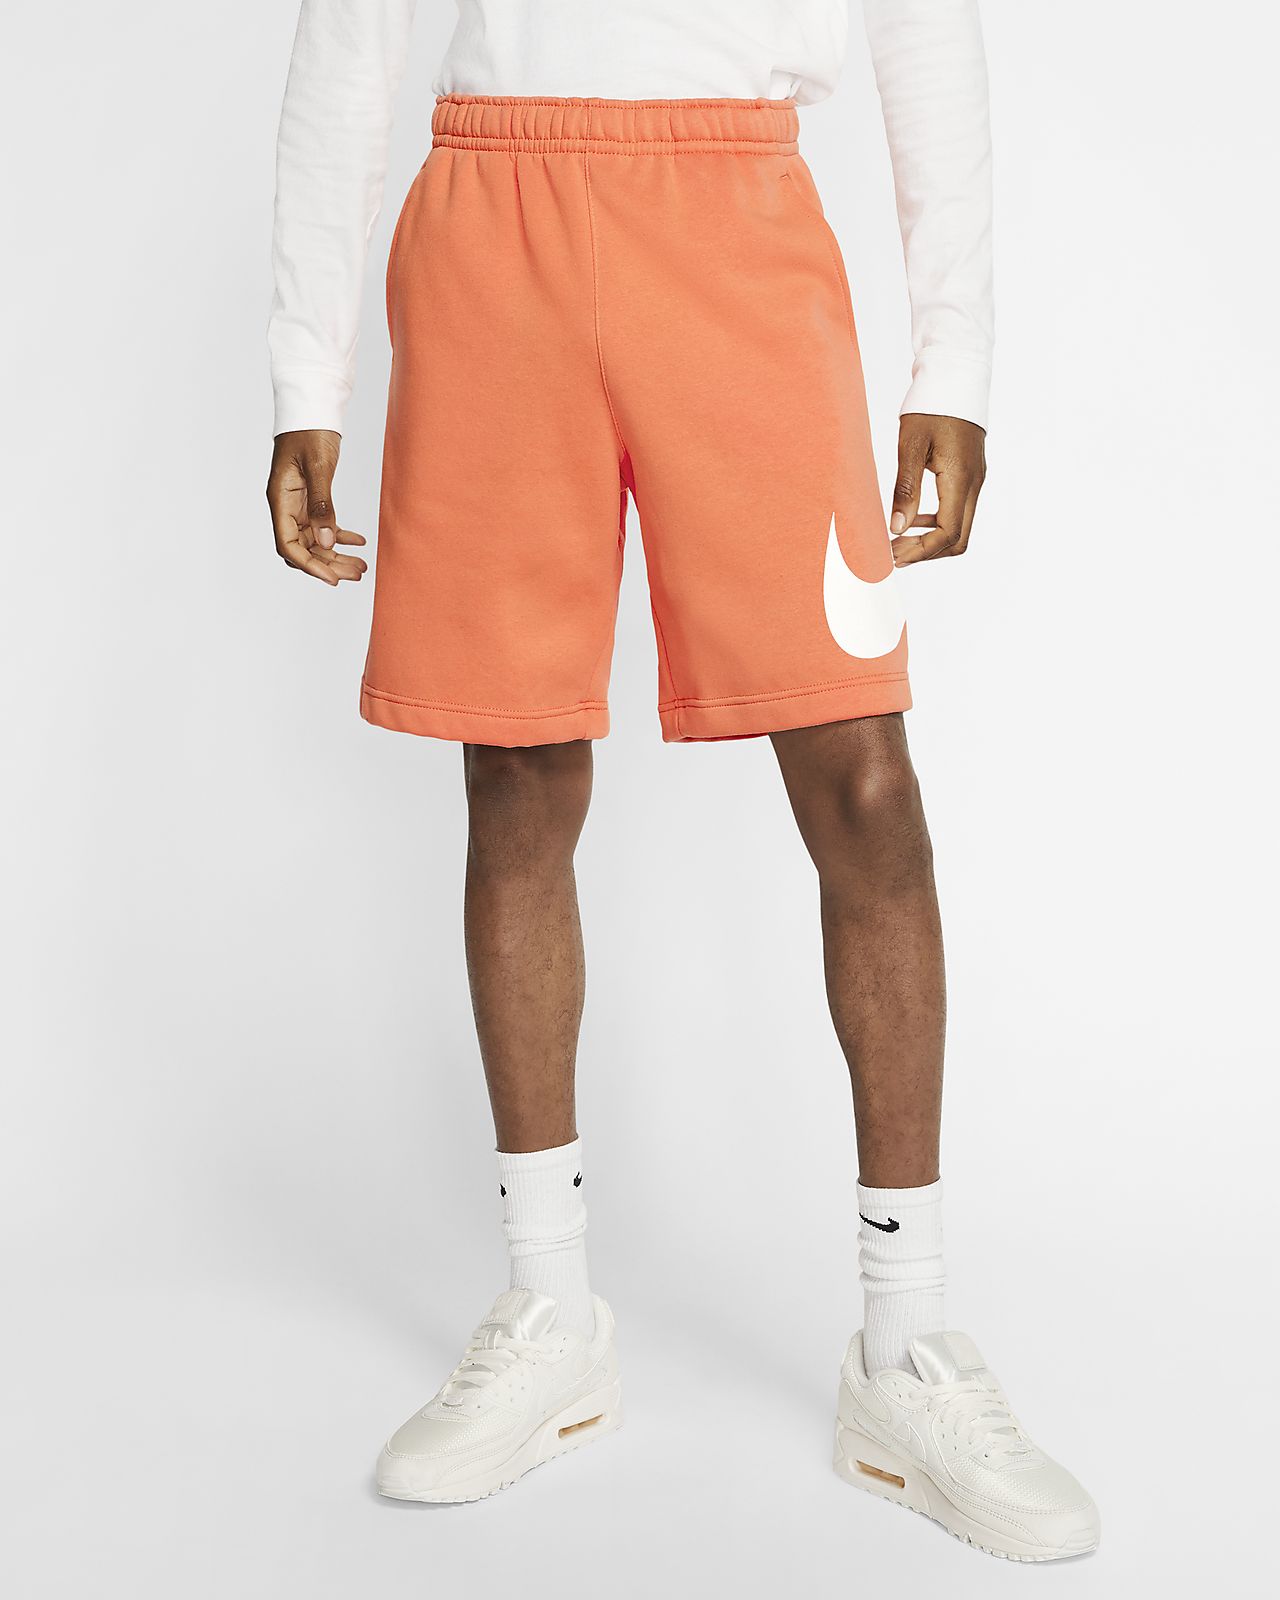 nike shorts orange 